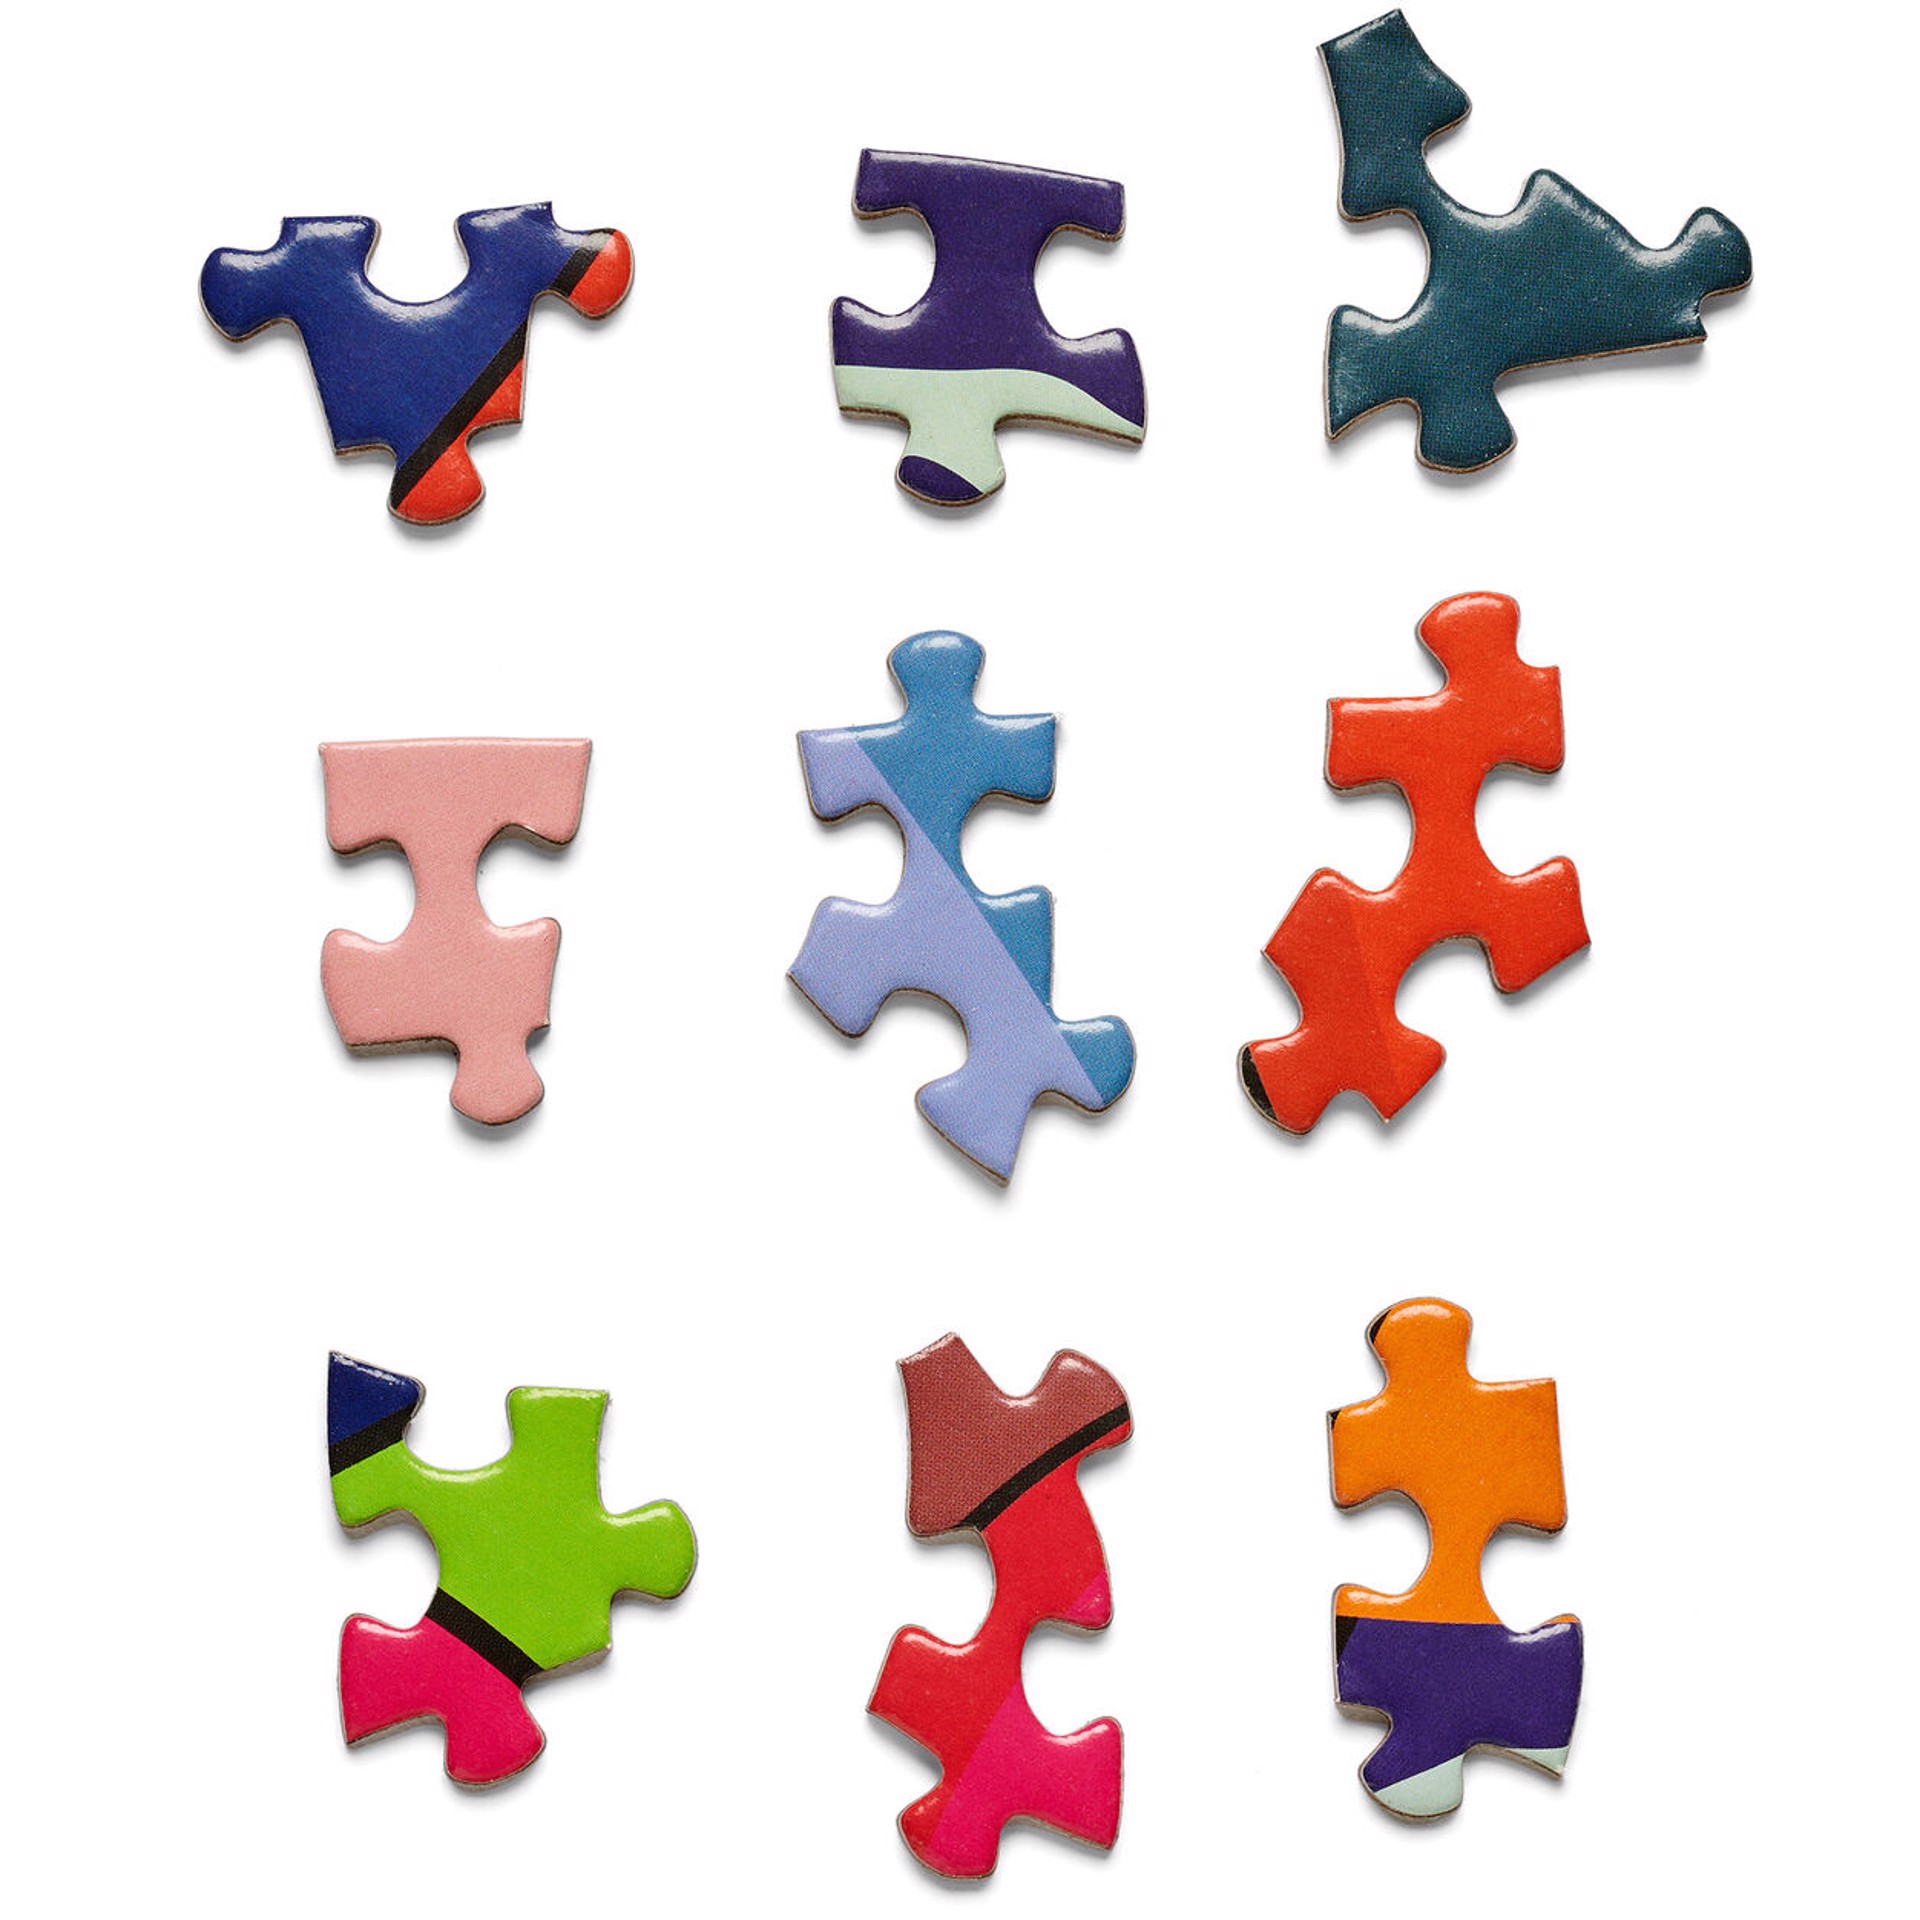 Stay Steady 1000 Piece Jigsaw Puzzle by KAWS